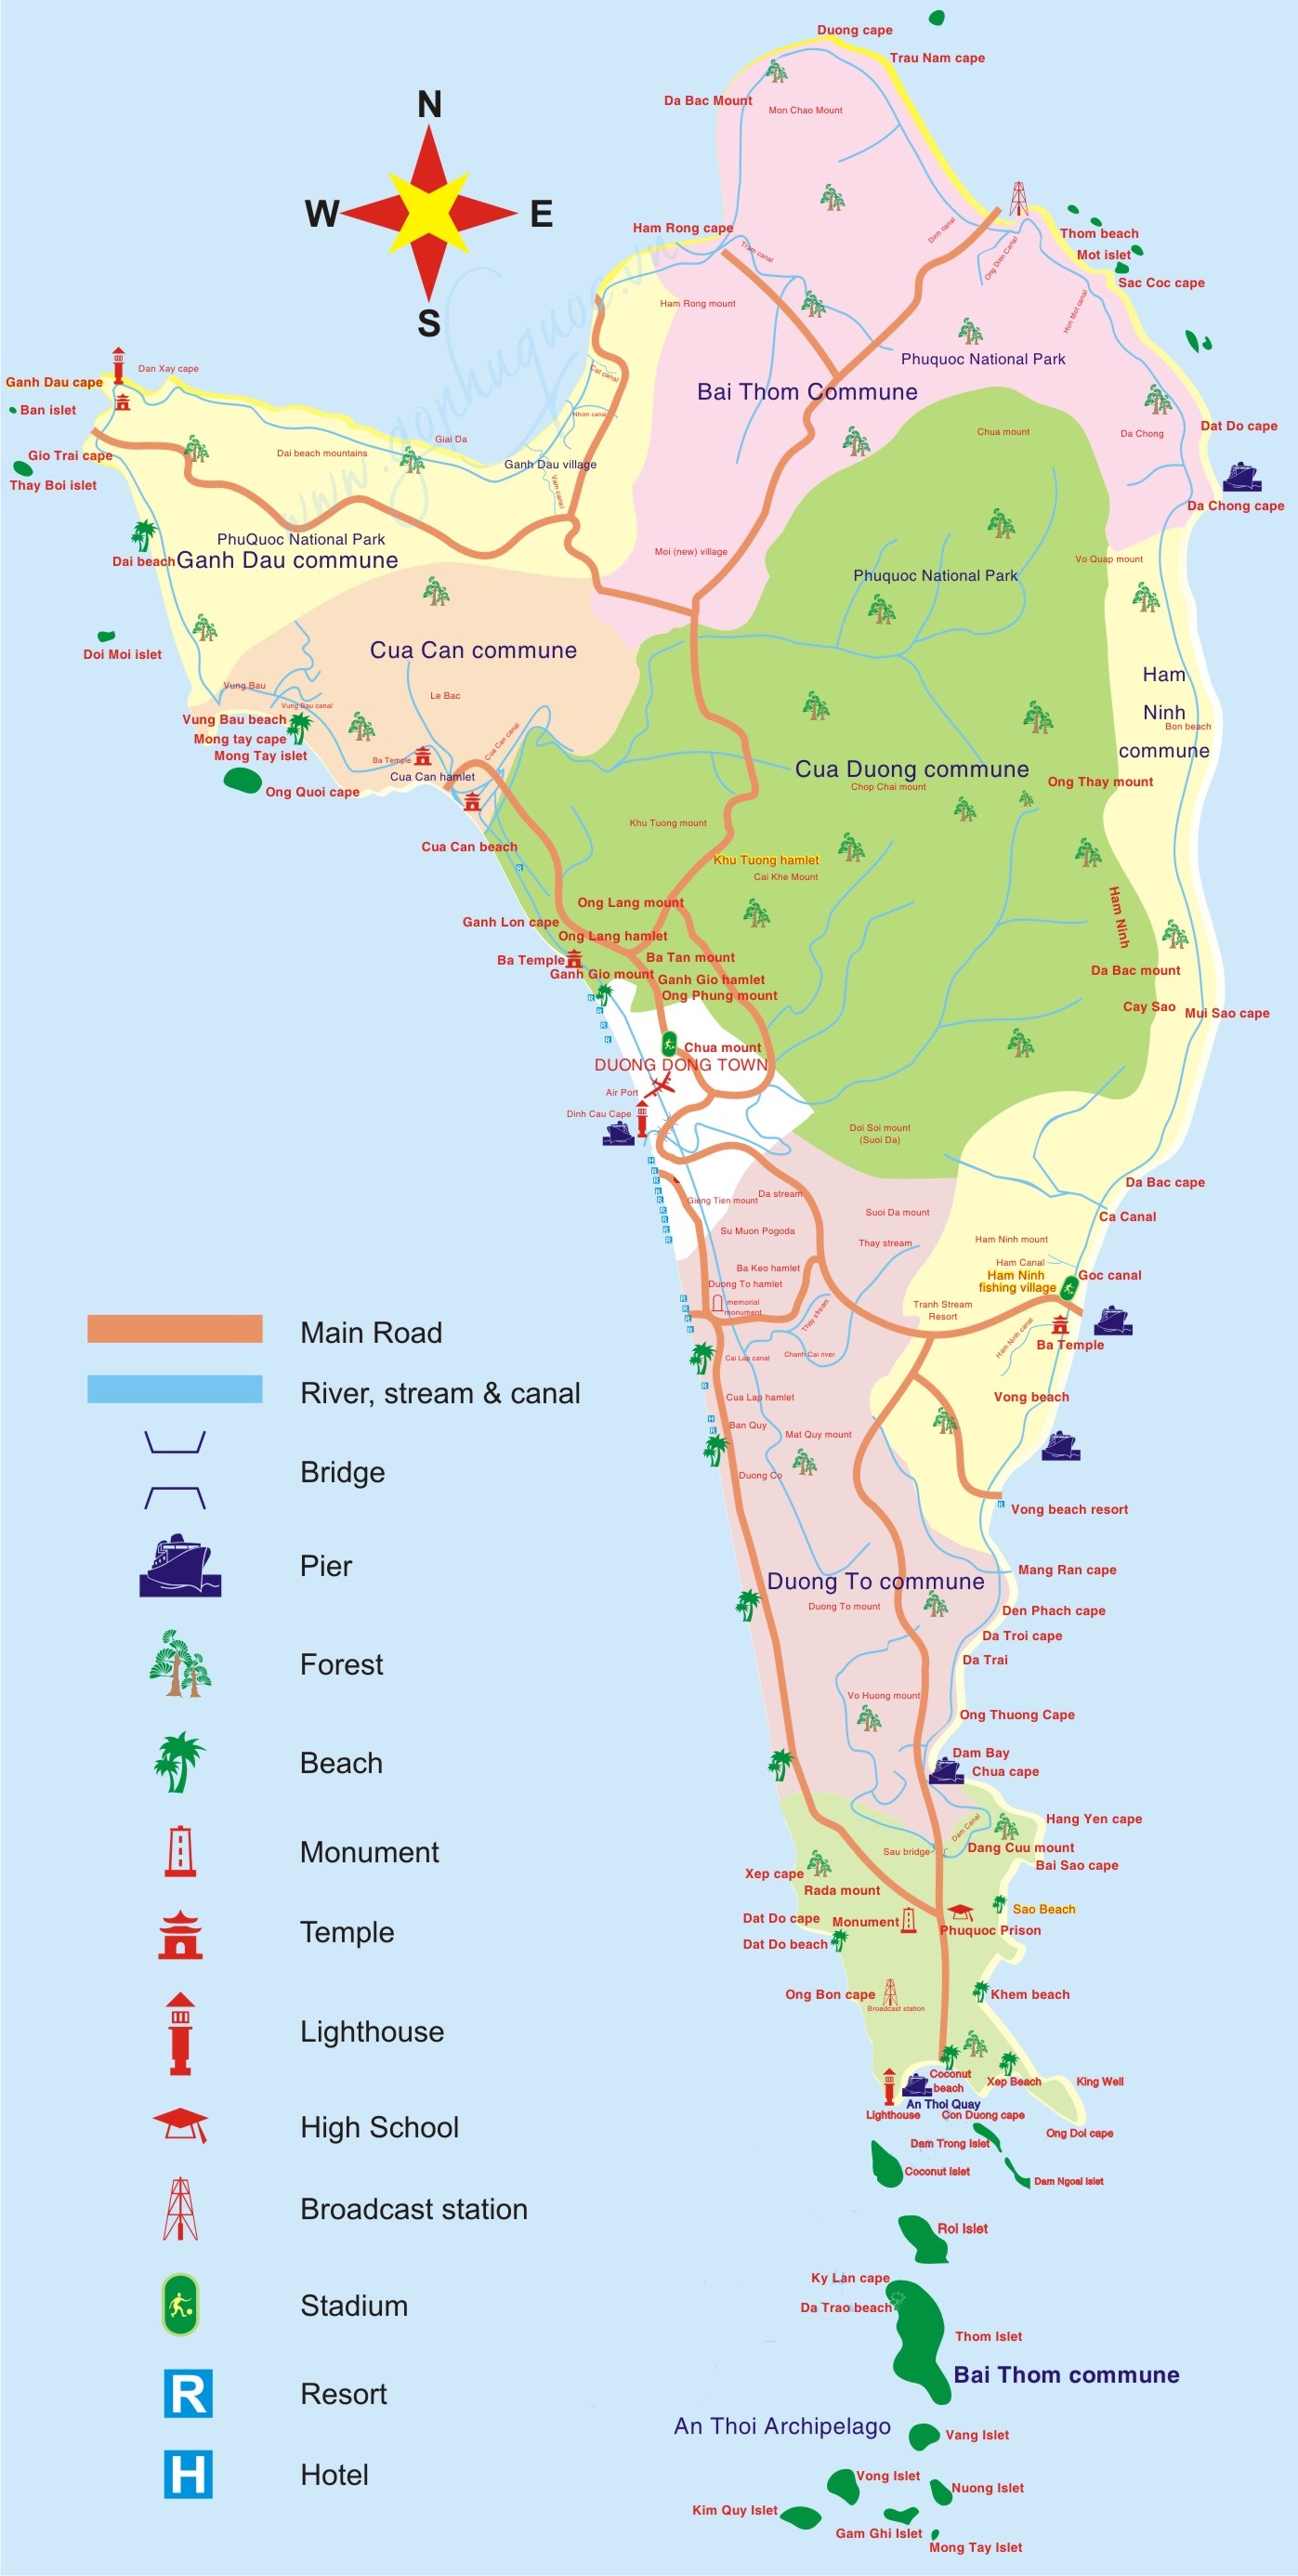 Bản đồ du lịch Phú Quốc 2021: Khám phá đảo Phú Quốc với bản đồ du lịch update mới nhất năm 2021, giúp bạn dễ dàng lên kế hoạch cho chuyến đi tuyệt vời của mình. Bạn sẽ không bỏ lỡ bất kì địa điểm tham quan nào trên đảo này, từ những bãi biển đẹp nhất đến những khu chợ độc đáo.